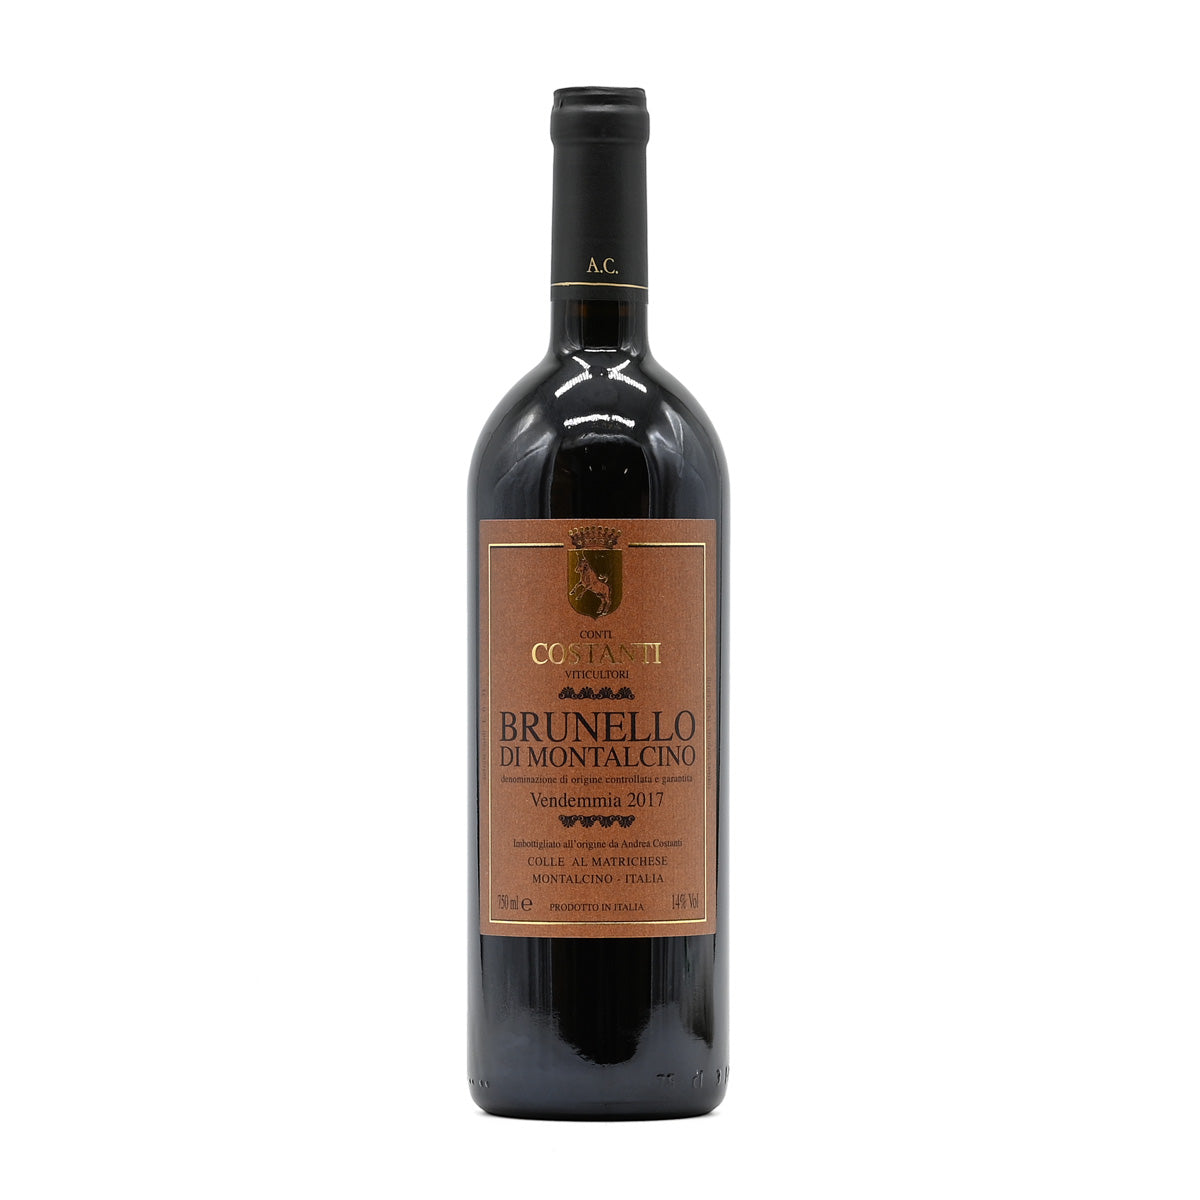 Conti Costanti Brunello di Montalcino 2017, 750ml Italian red wine, made from Sangiovese, from Brunello di Montalcino DOC, Tuscany, Italy – GDV Fine Wines, Hong Kong